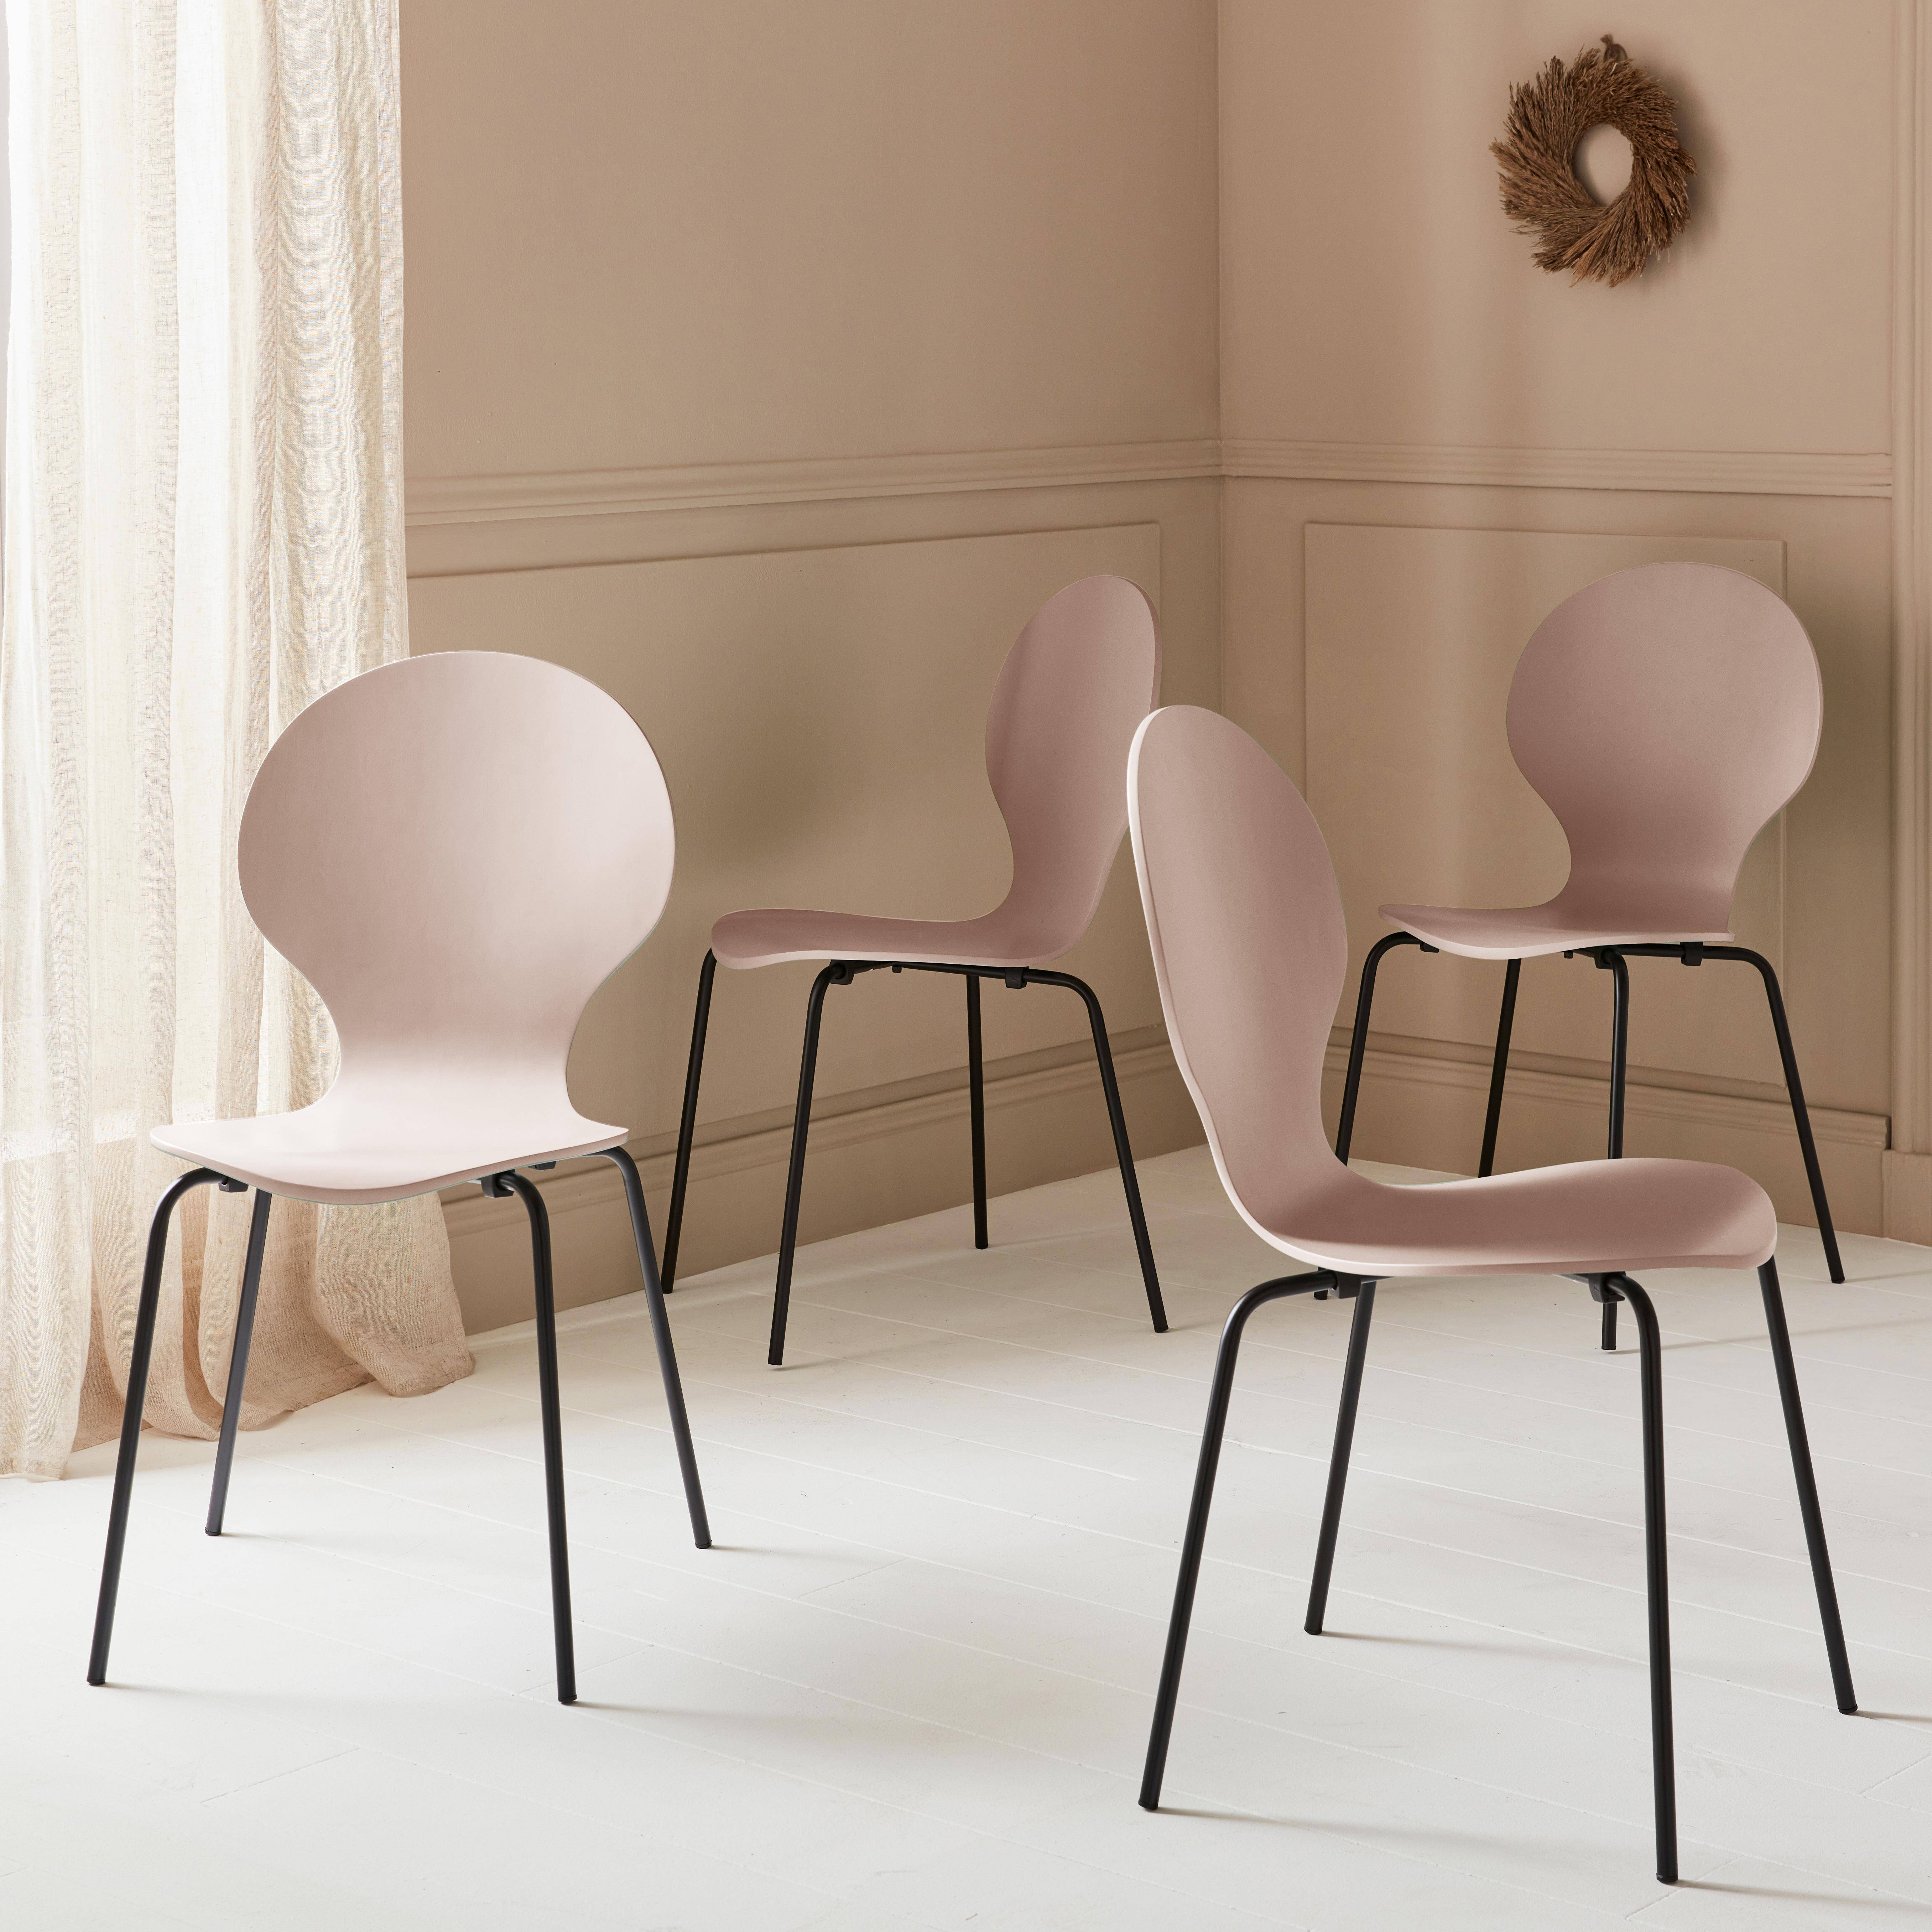 Set di 4 sedie rosa retro impilabili, legno di hevea e compensato, gambe in acciaio, Naomi, L 43 x P 48 x H 87cm Photo1